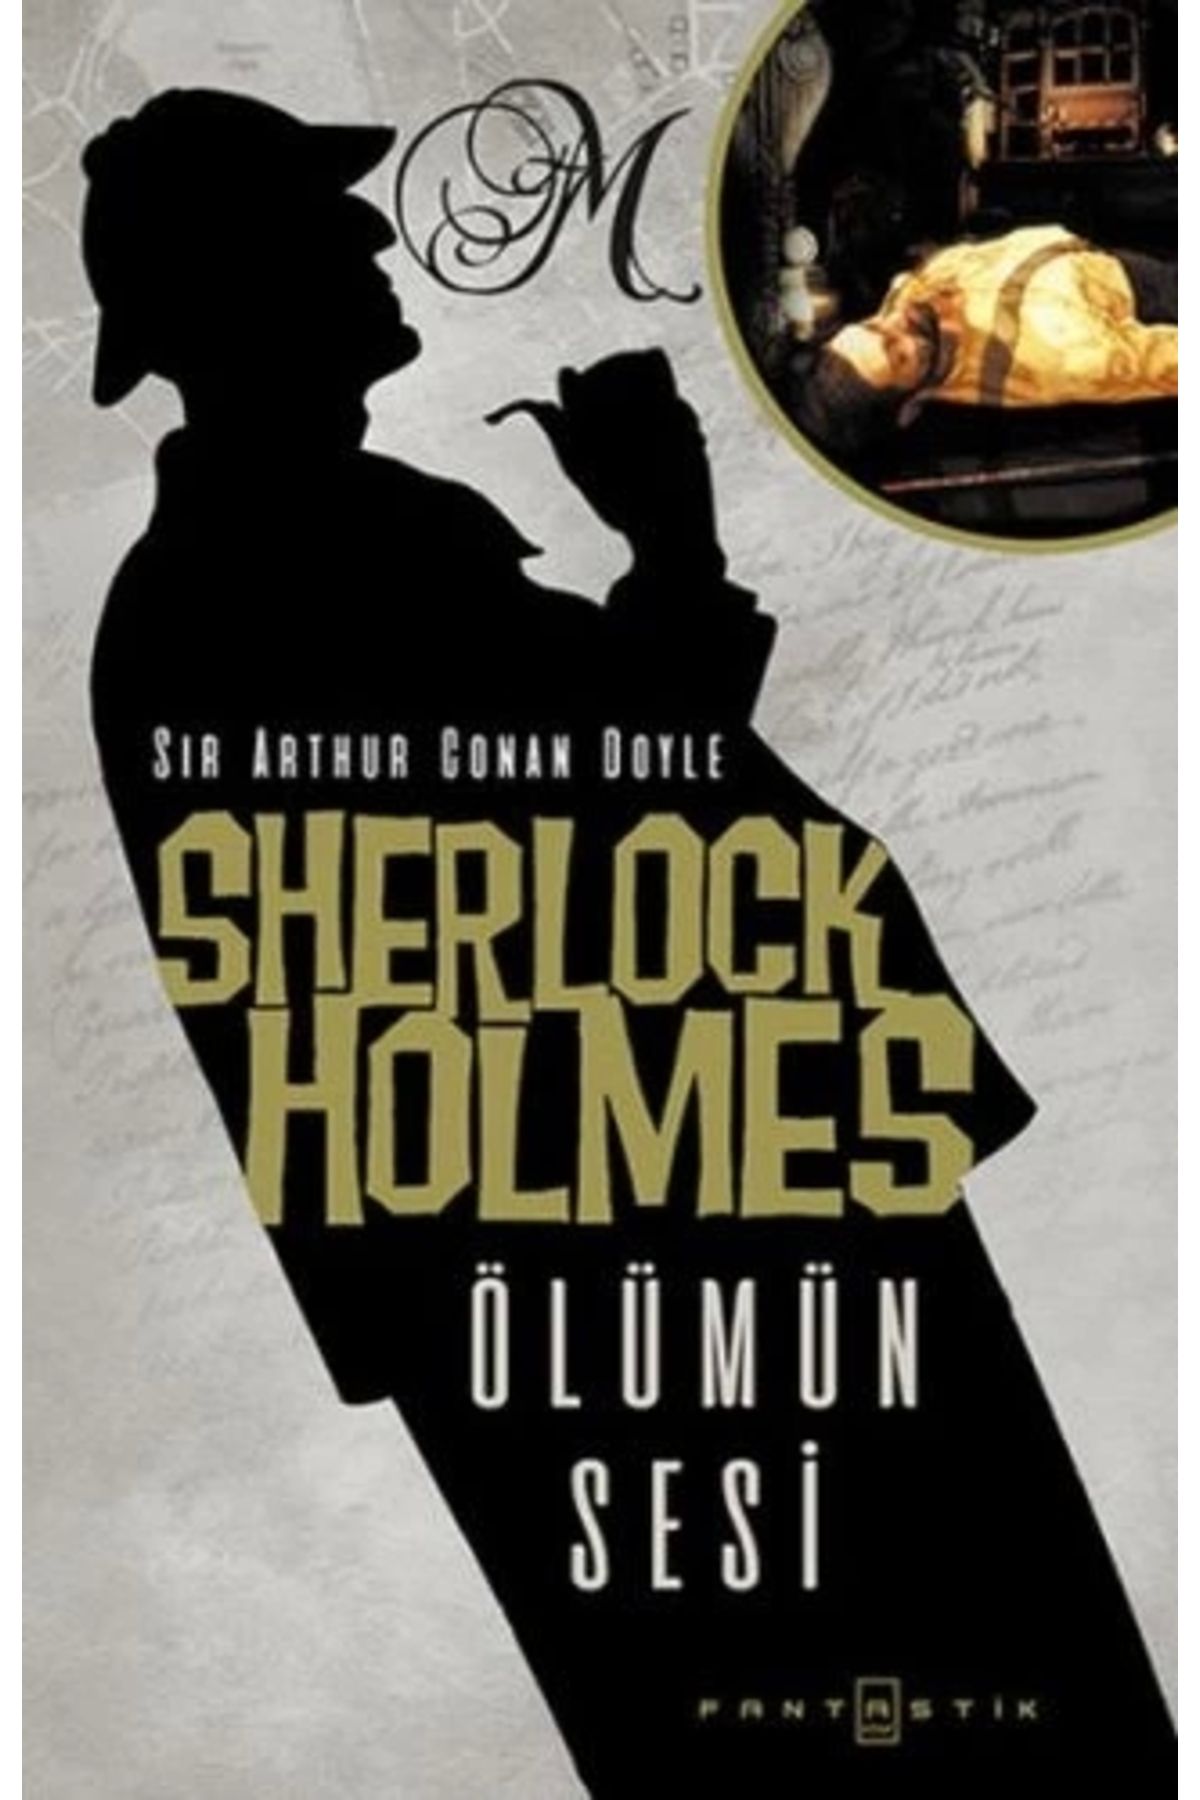 Fantastik Sherlock Holmes - Ölümün Sesi